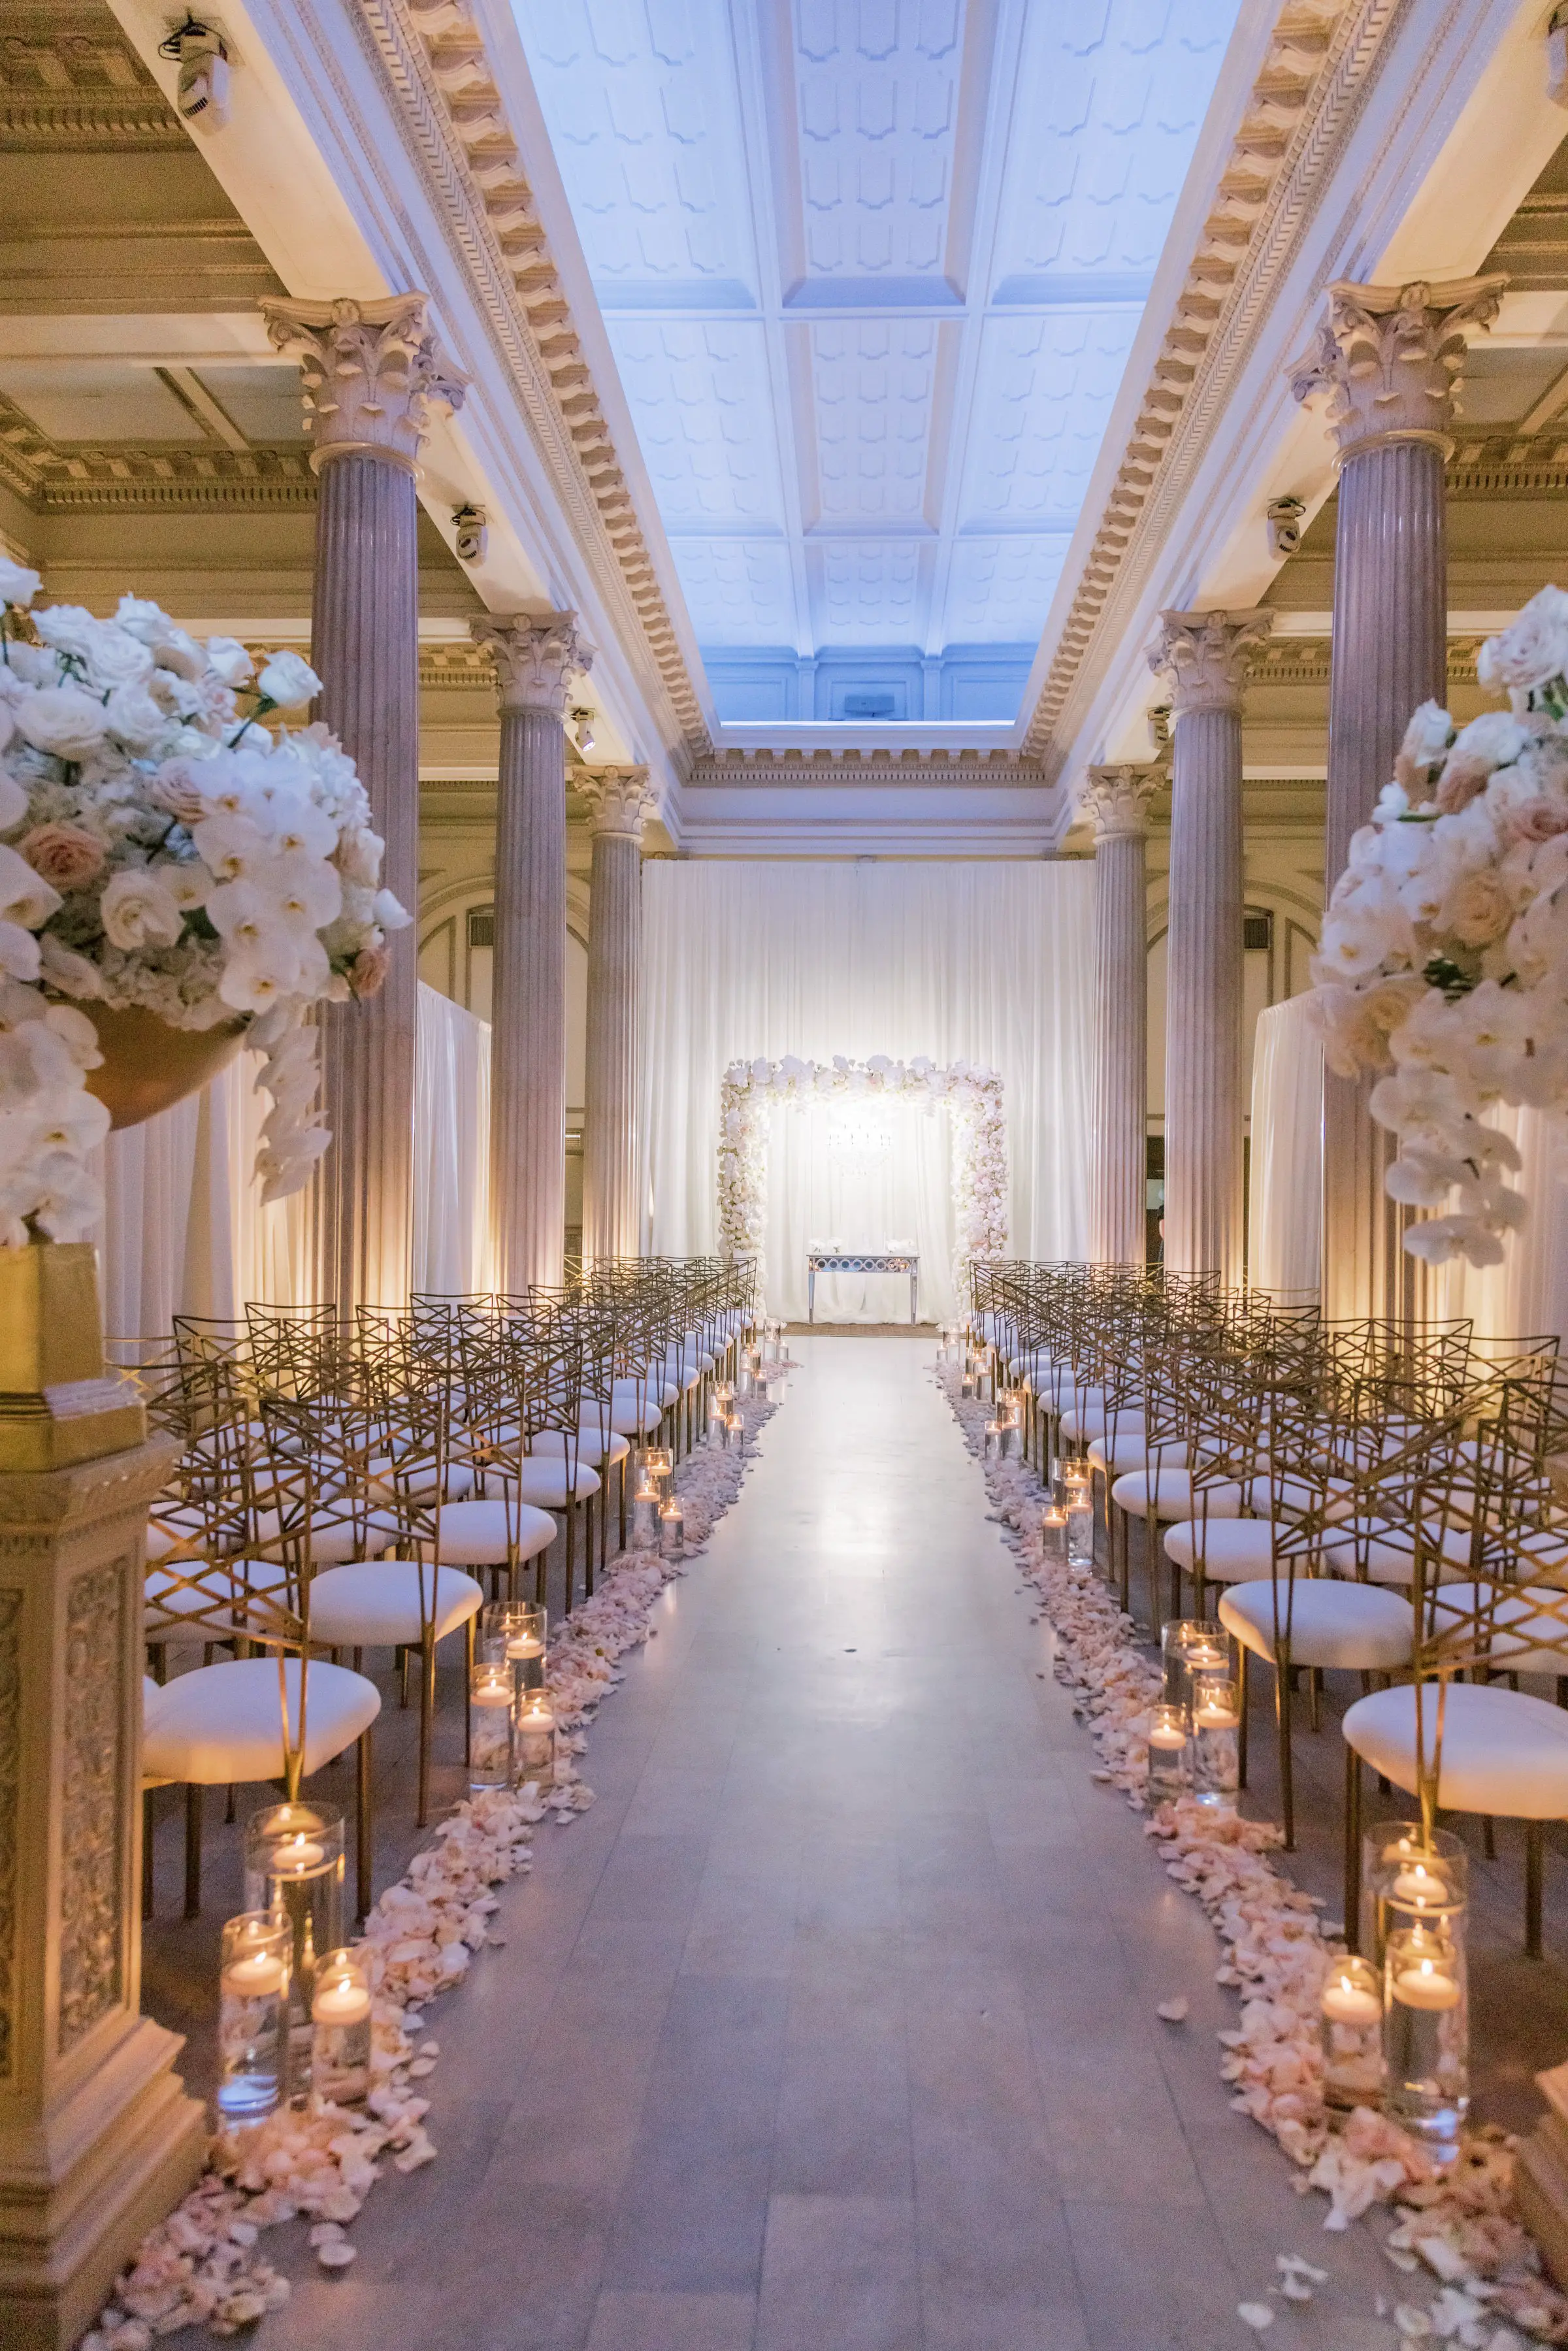 Indoor glamorous wedding ceremony decor - Photography: Brooke Images